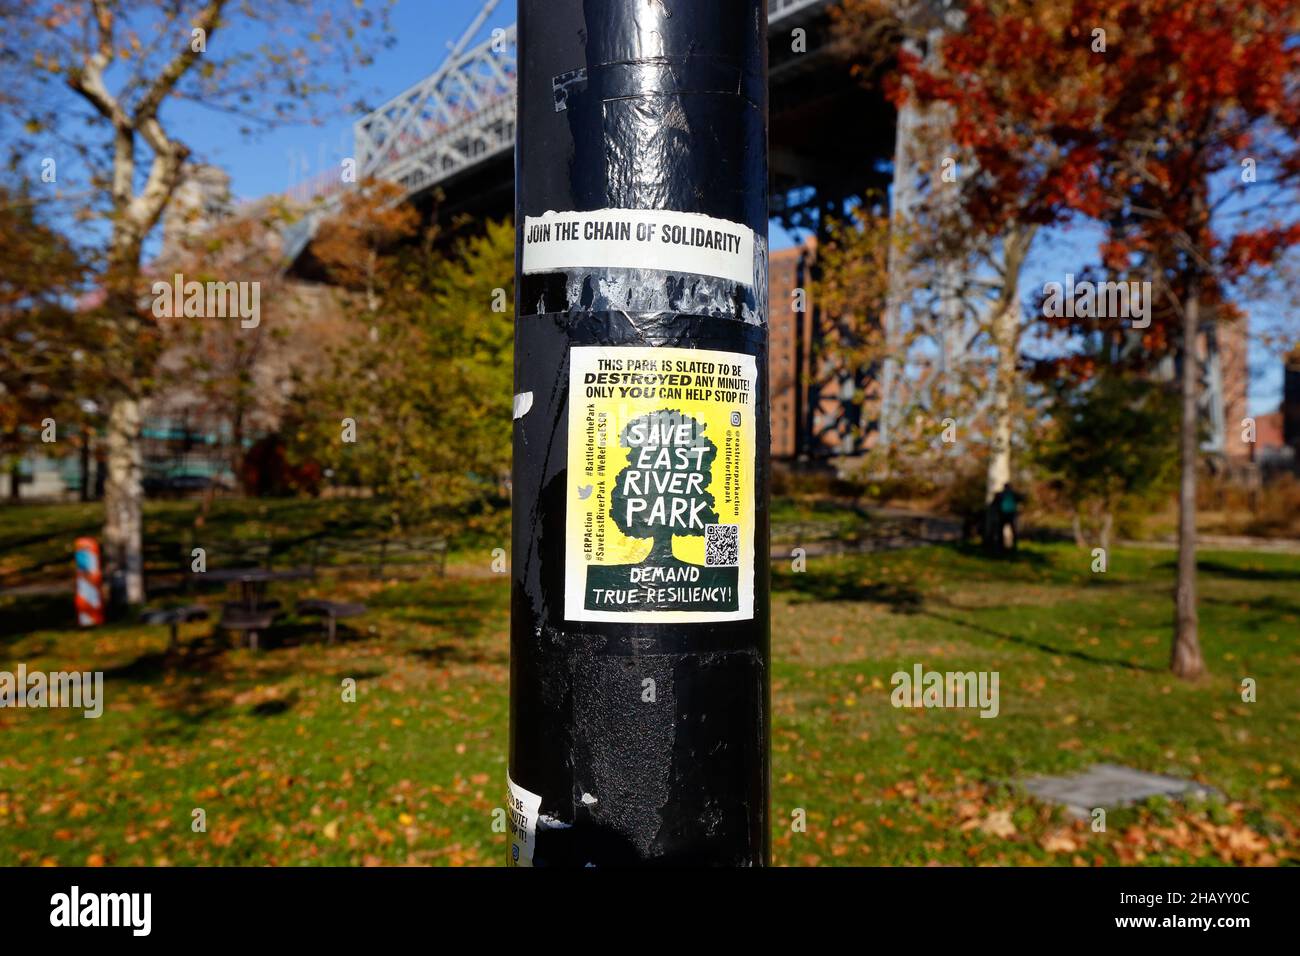 Un folleto 'Save East River Park' en un poste ligero en East River Park, Nueva York. 23 de noviembre de 2021. [consulte la información adicional para ver la leyenda completa] Foto de stock